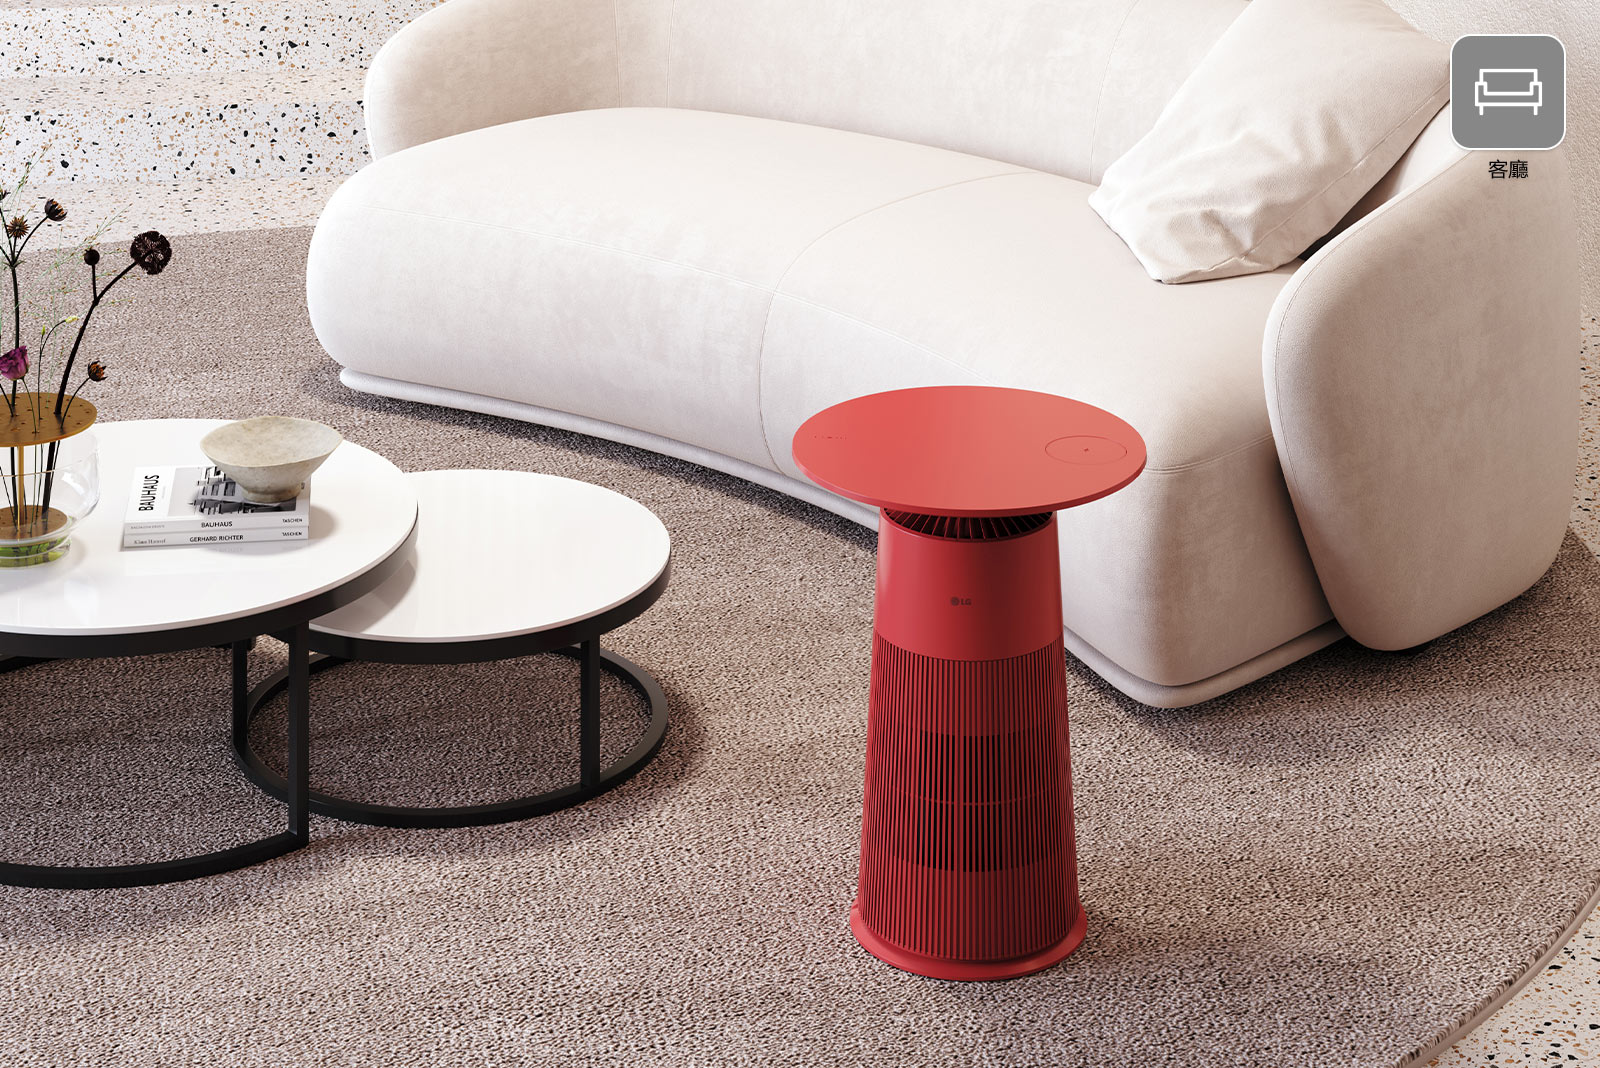 矗立在沙發和桌子間的紅色產品很顯眼。成為客廳引人注目的焦點。